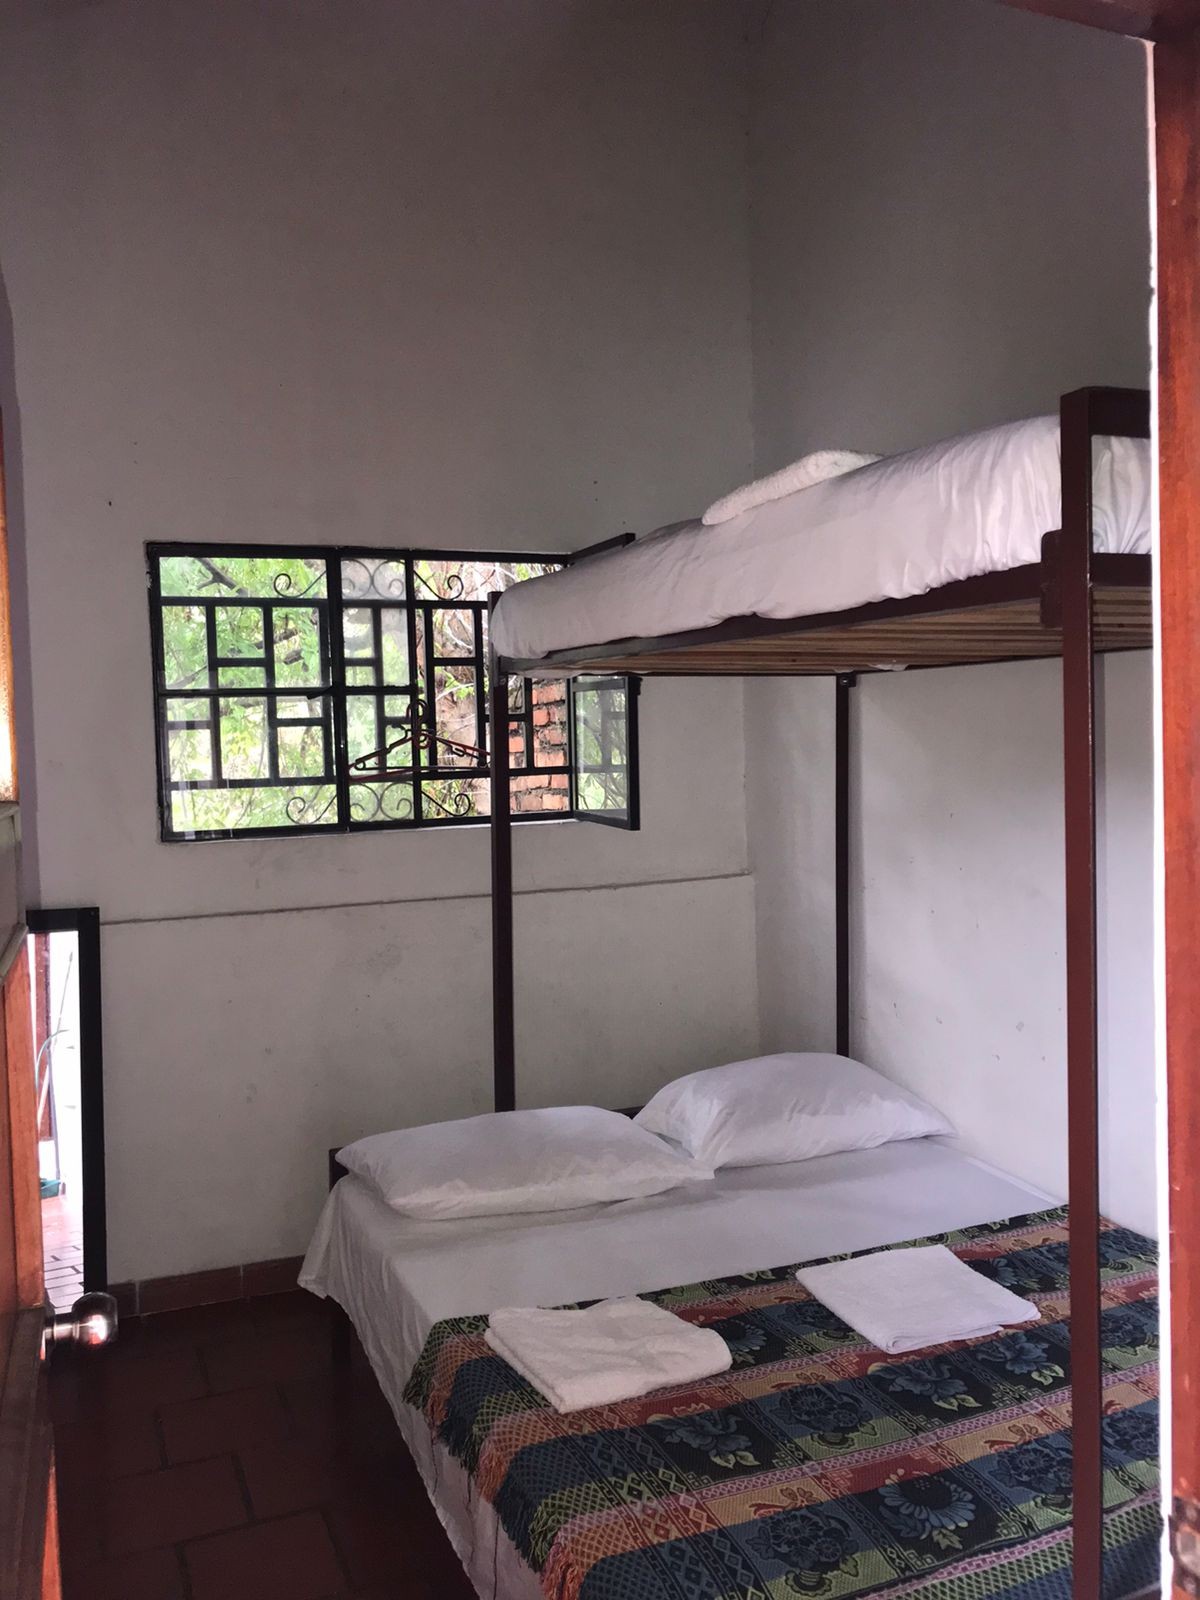 Casa familiar cama doble con camarote sencillo